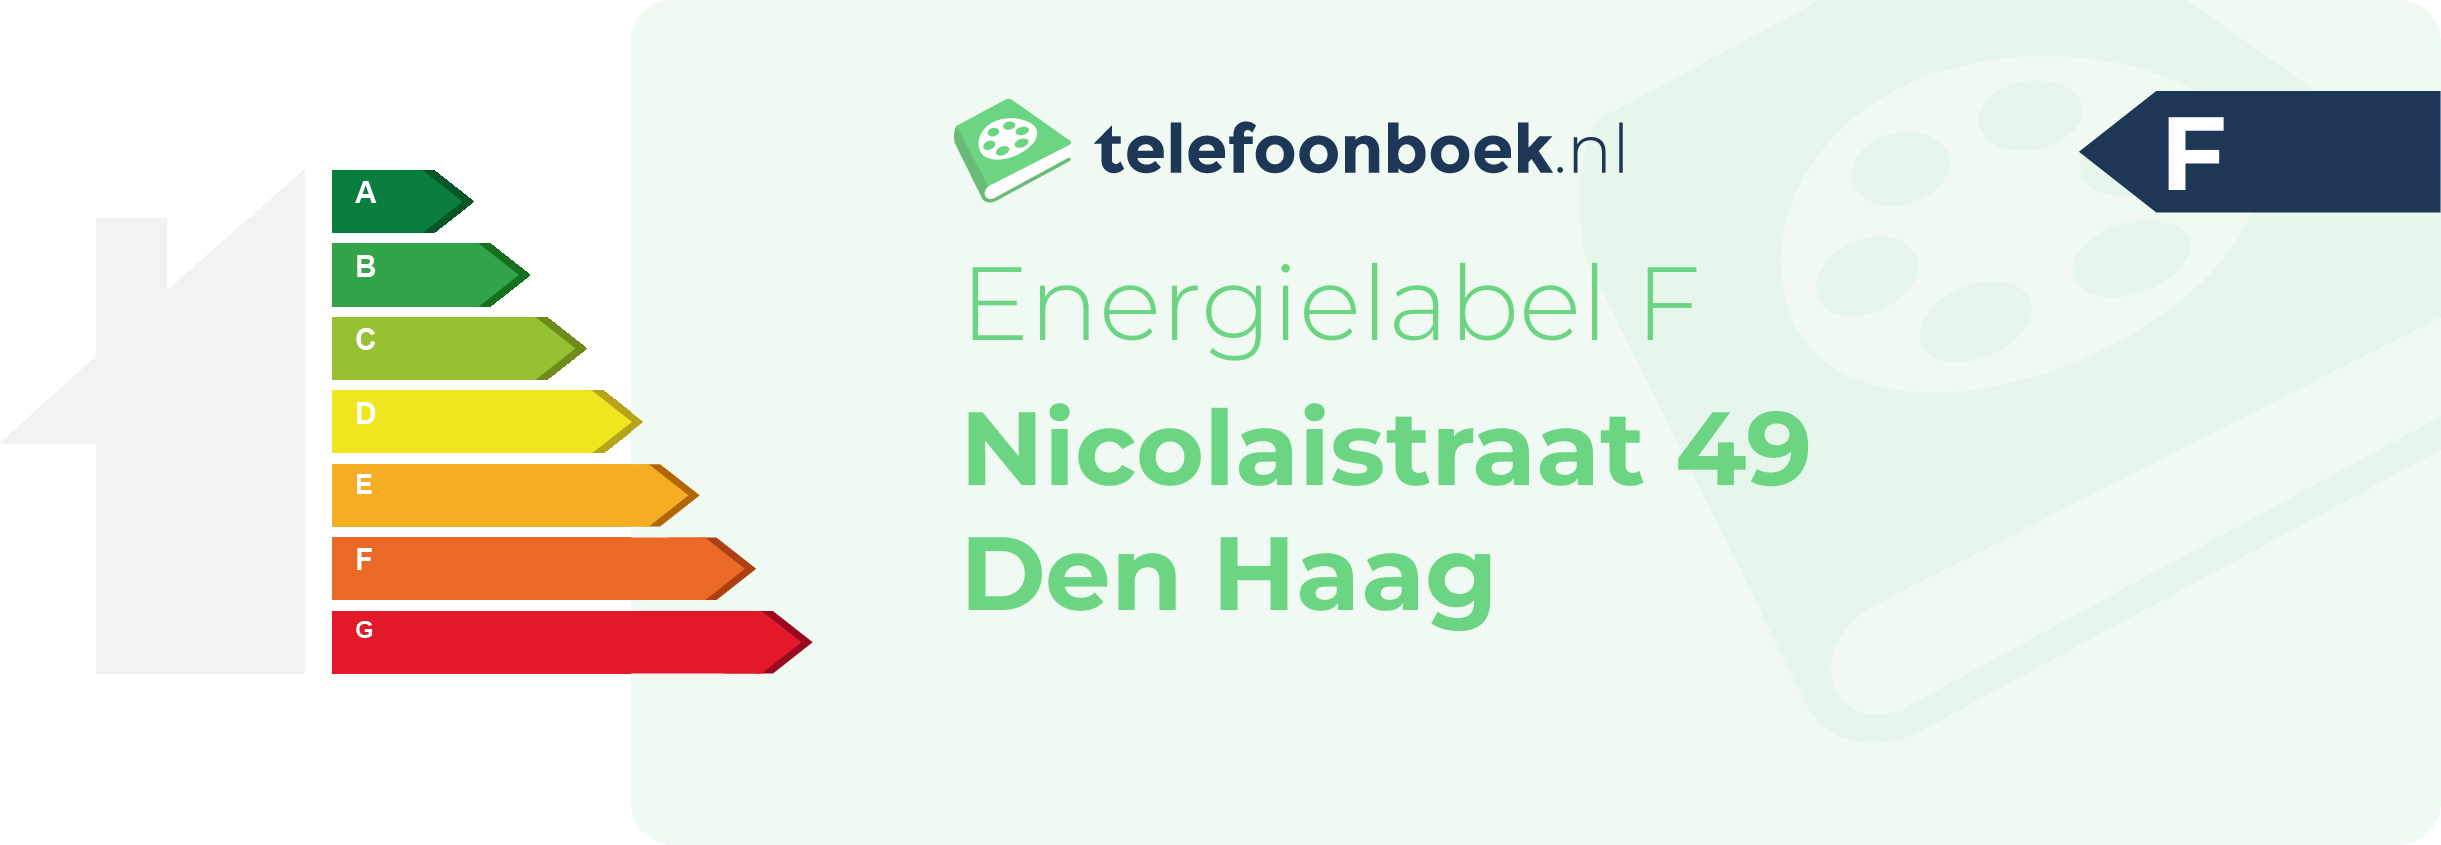 Energielabel Nicolaistraat 49 Den Haag